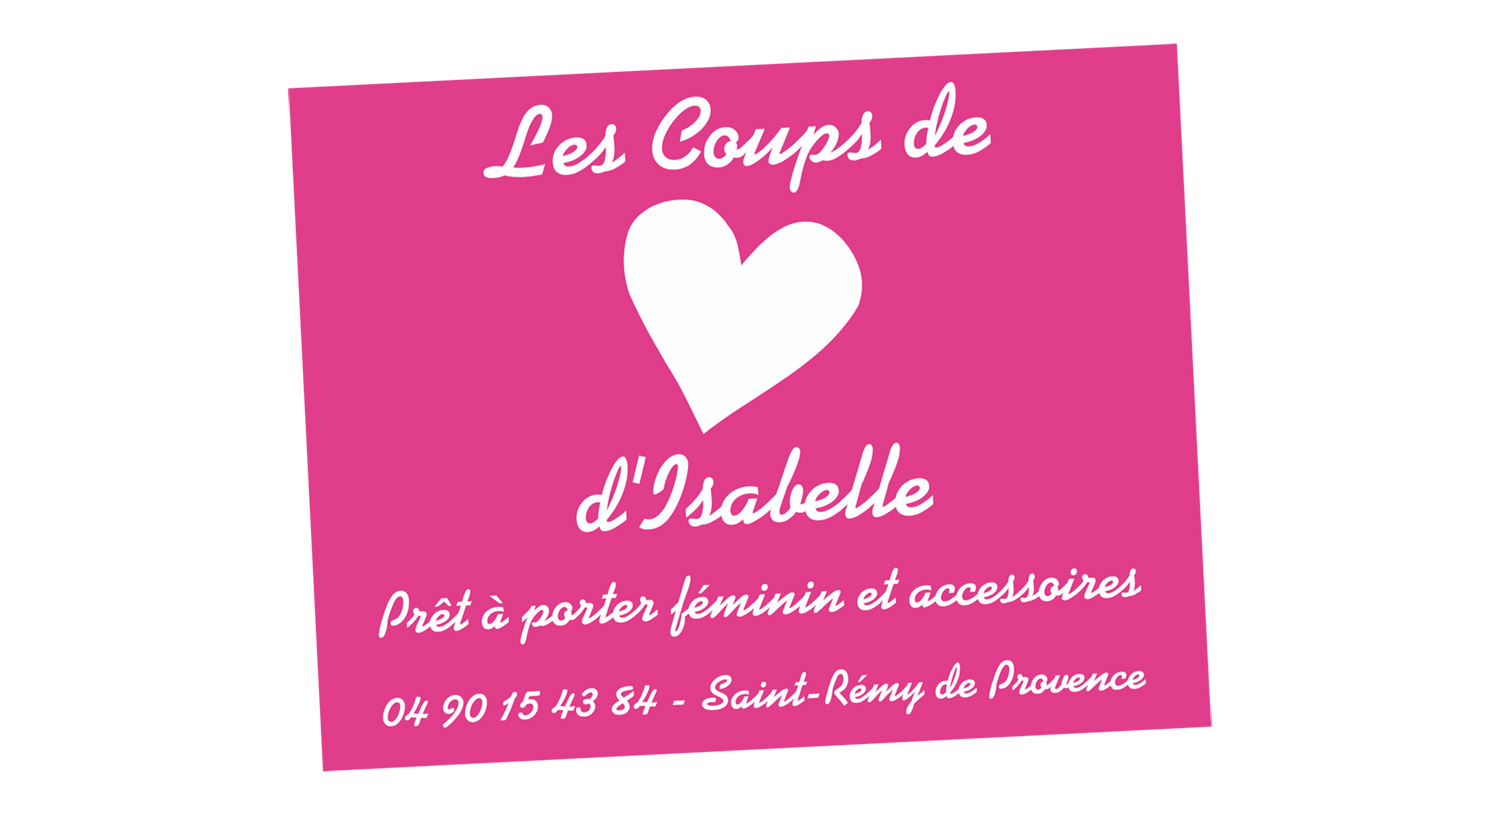 Cartes de visite Les Coups de Coeur d'Isabelle - Saint-Rémy de Provence